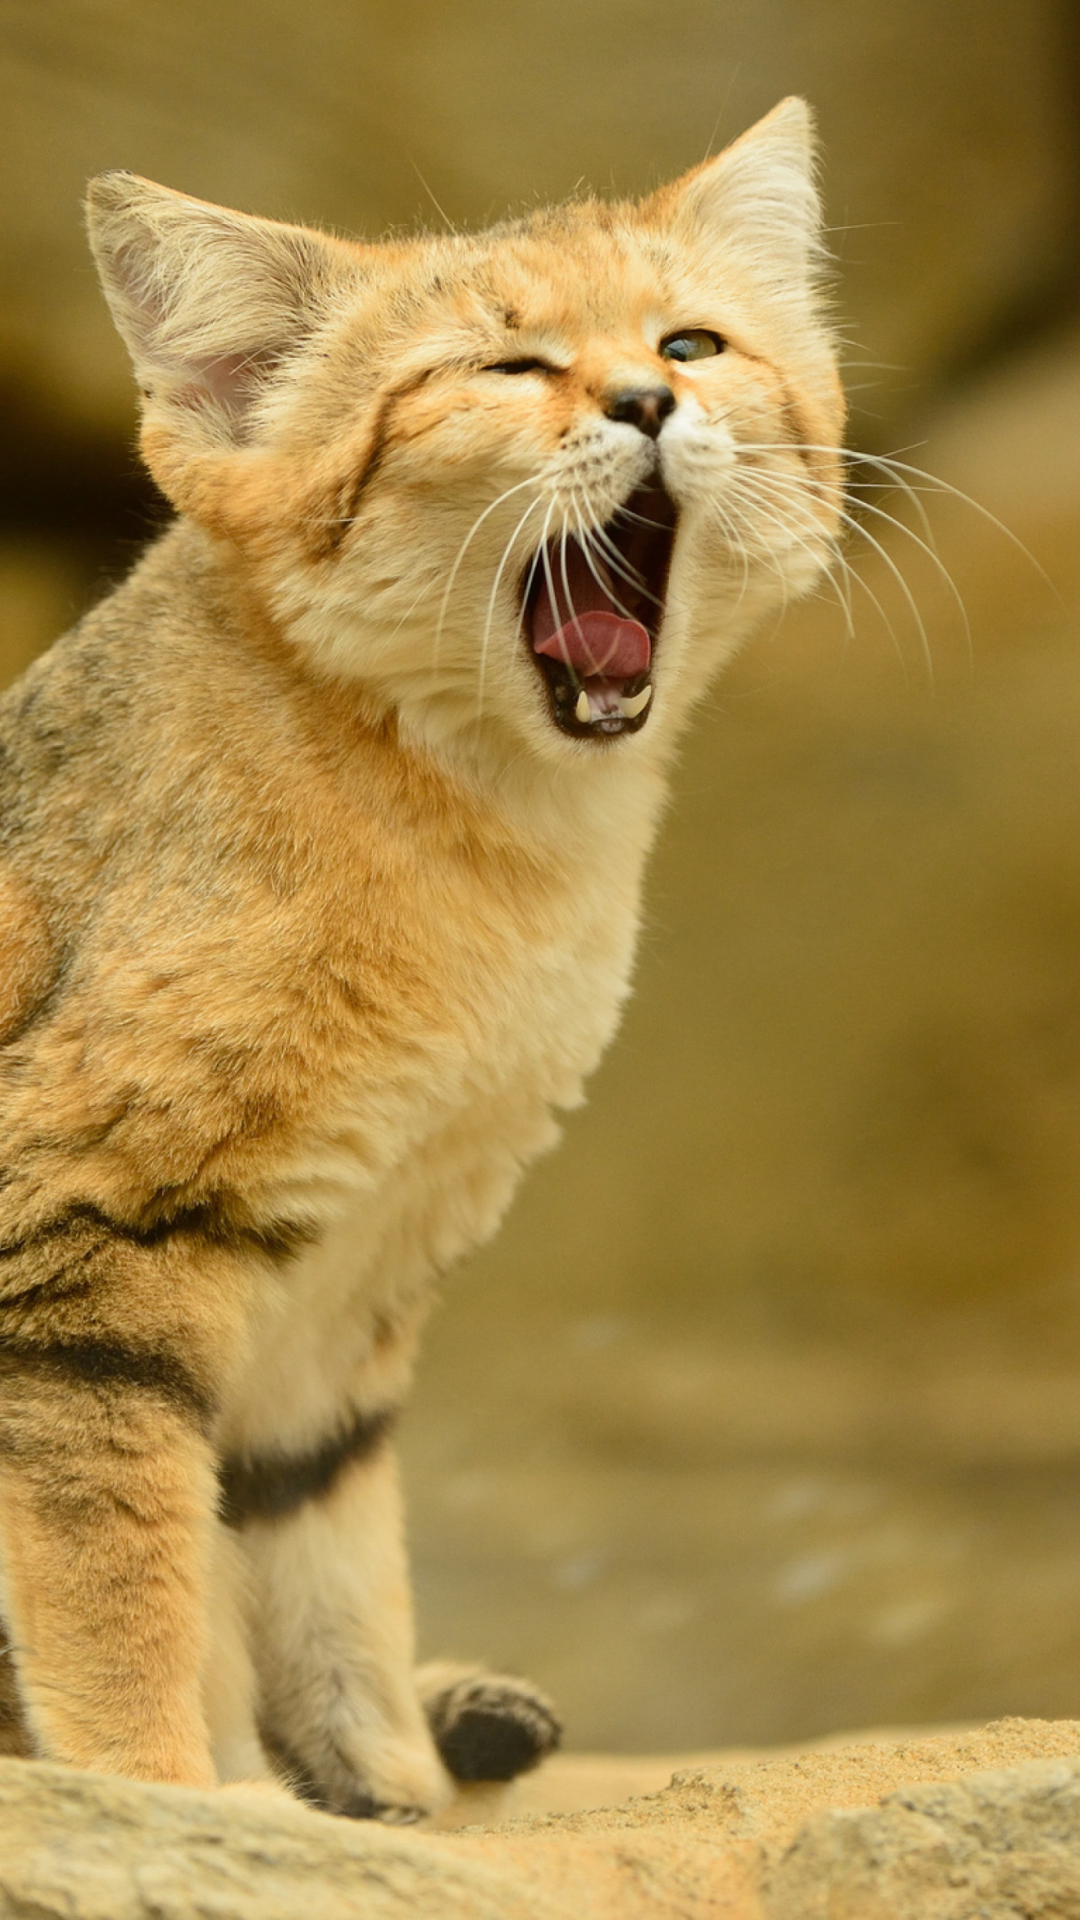 Yawning Kitten wallpaper 1080x1920